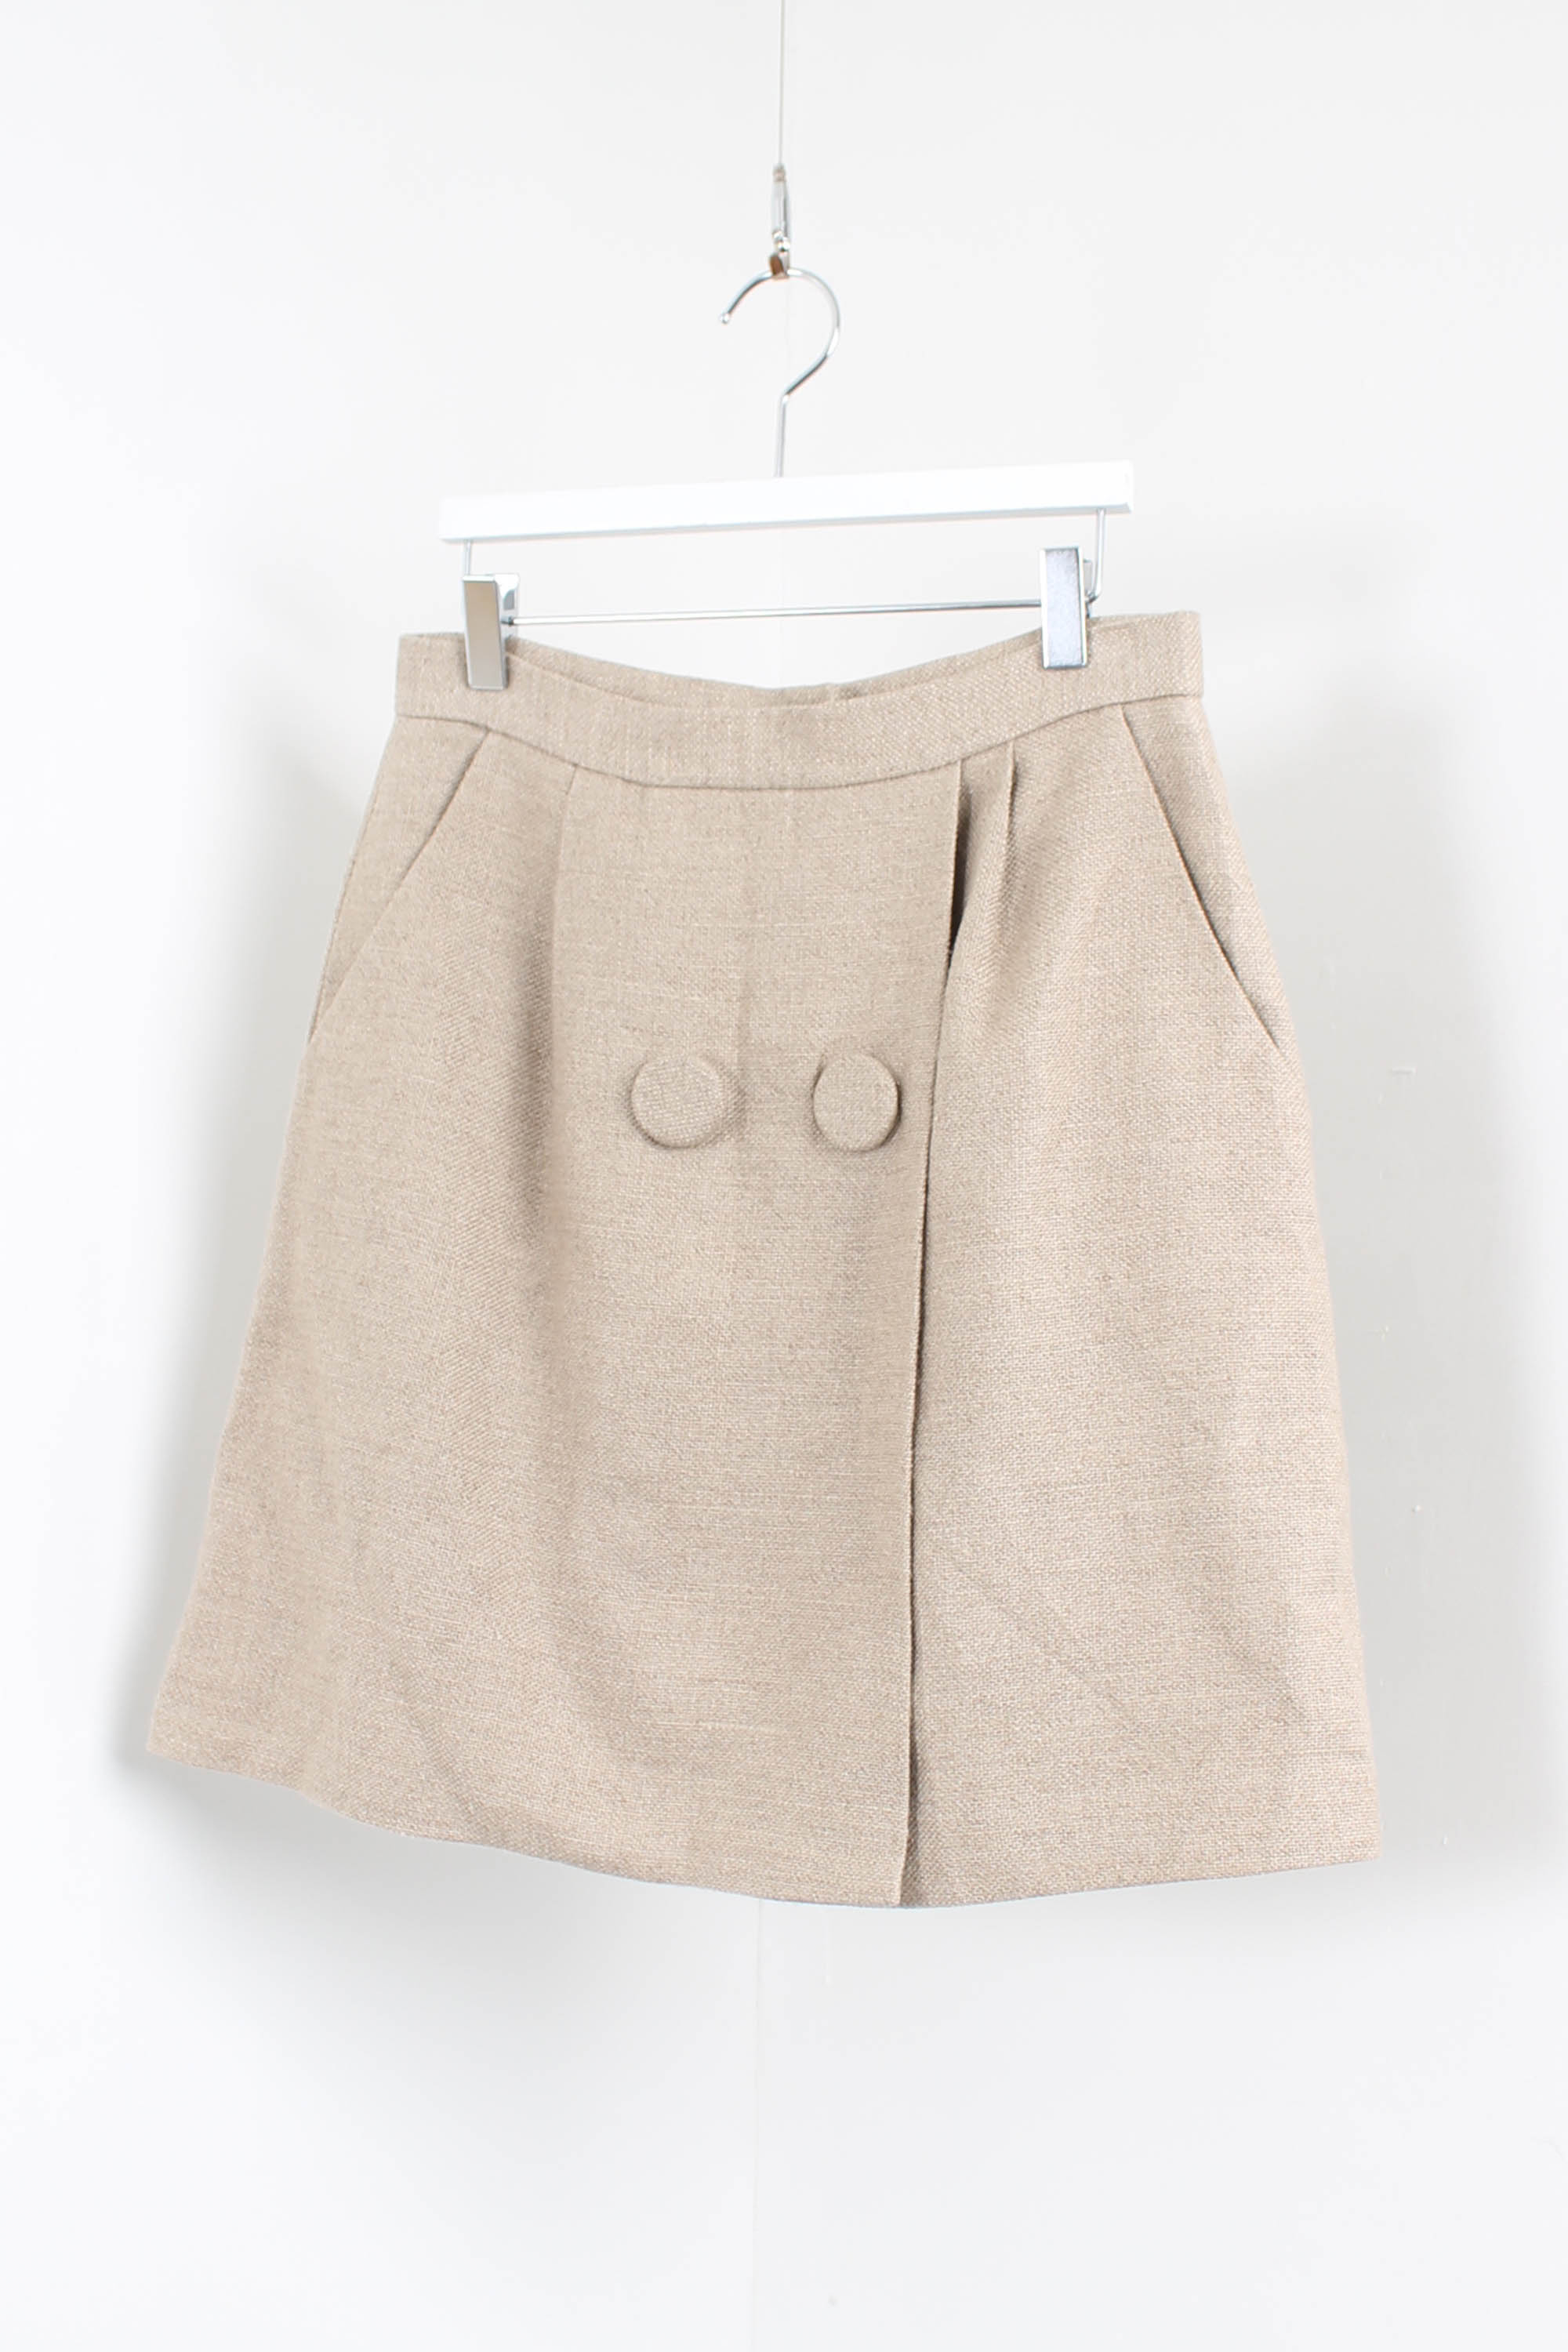 3.1 Phillip Lim linen skirt